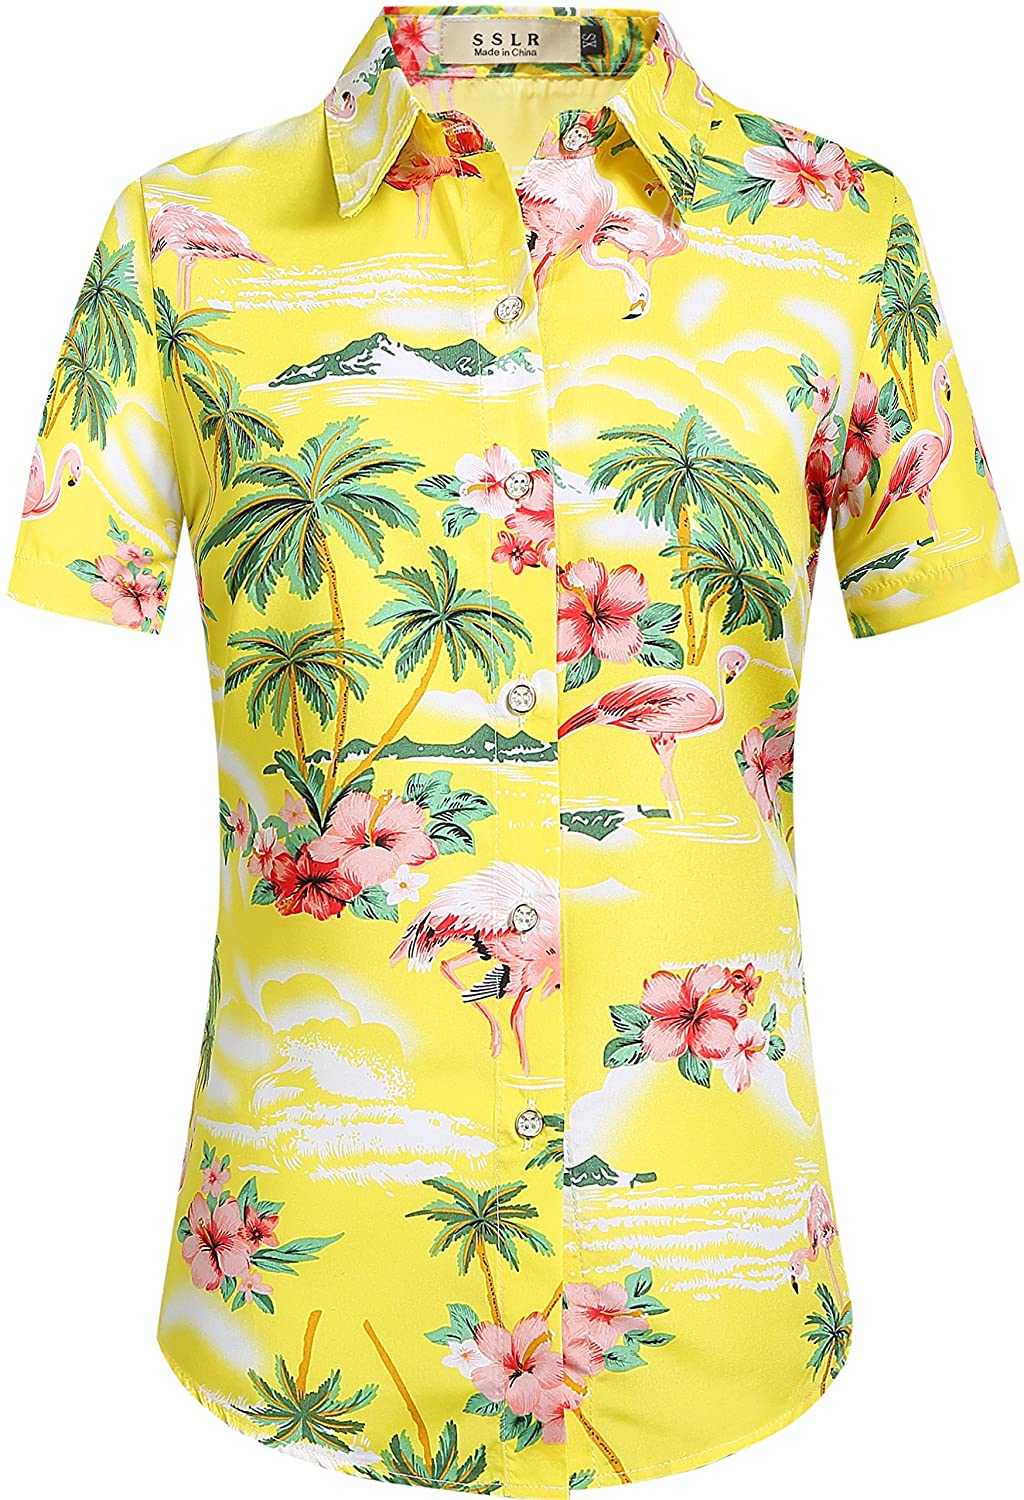 SSLR Women's Flamingos Floral Casual Short Sleeve Hawaiian Shirt | eBay